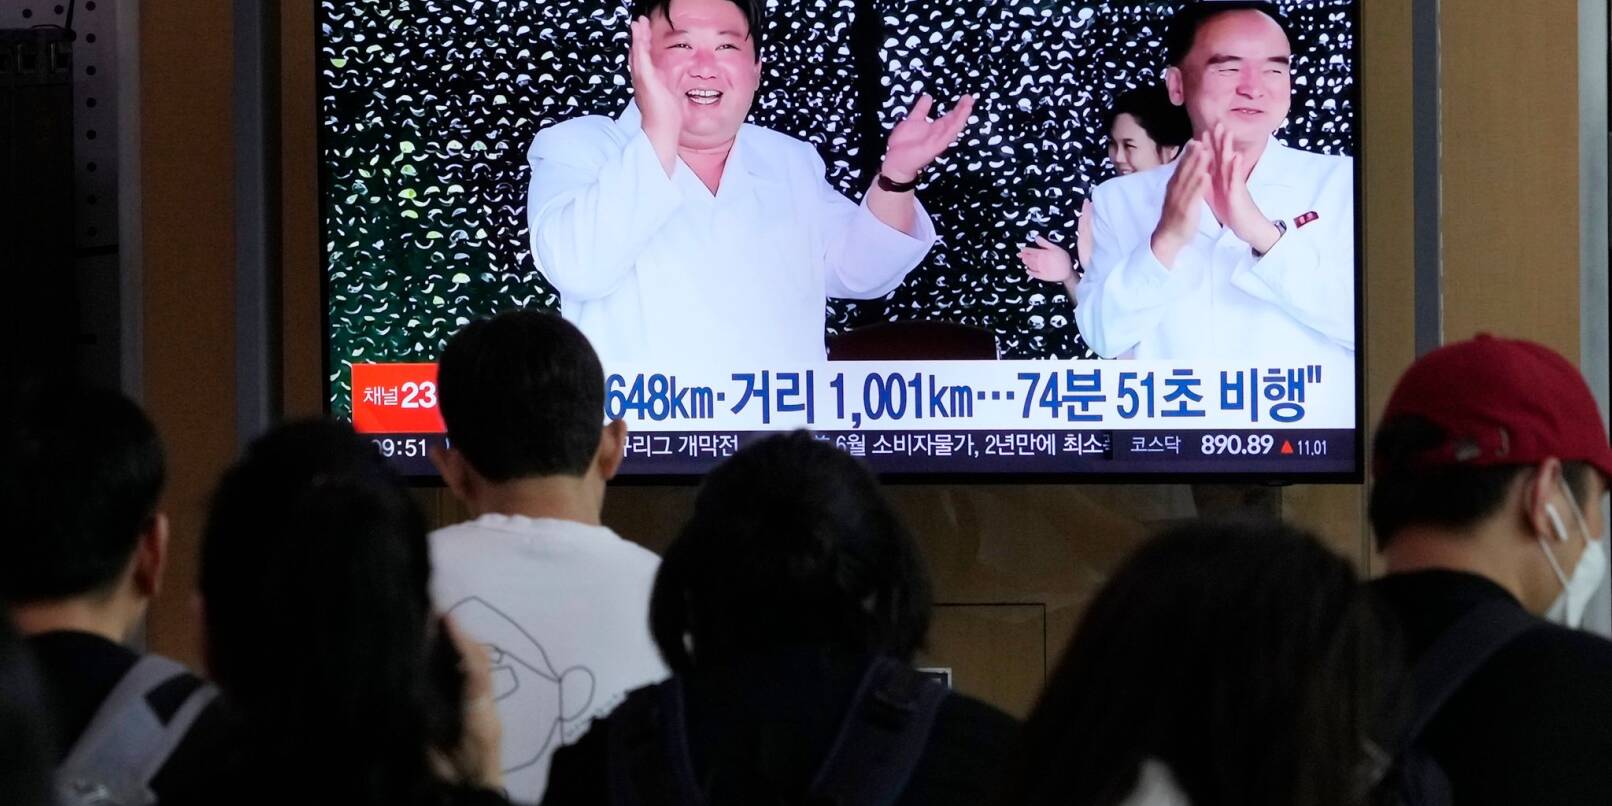 Ein Fernsehbildschirm zeigt ein Bild von Kim Jong Un (l) während einer Nachrichtensendung im Bahnhof von Seoul.